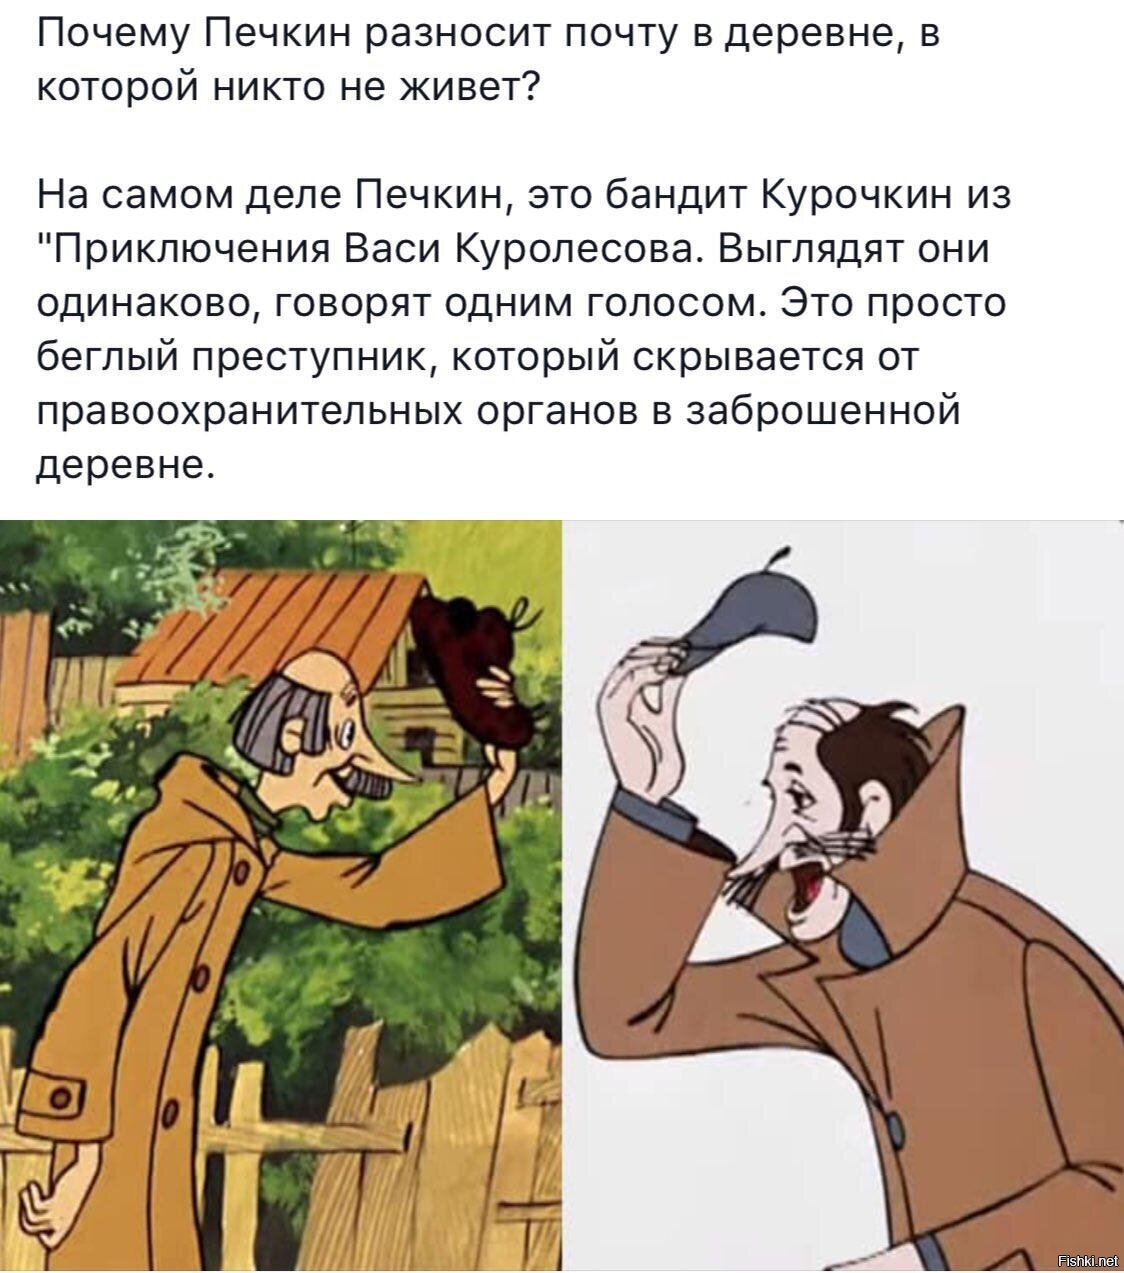 Приключения Васи Куролесова Курочкин